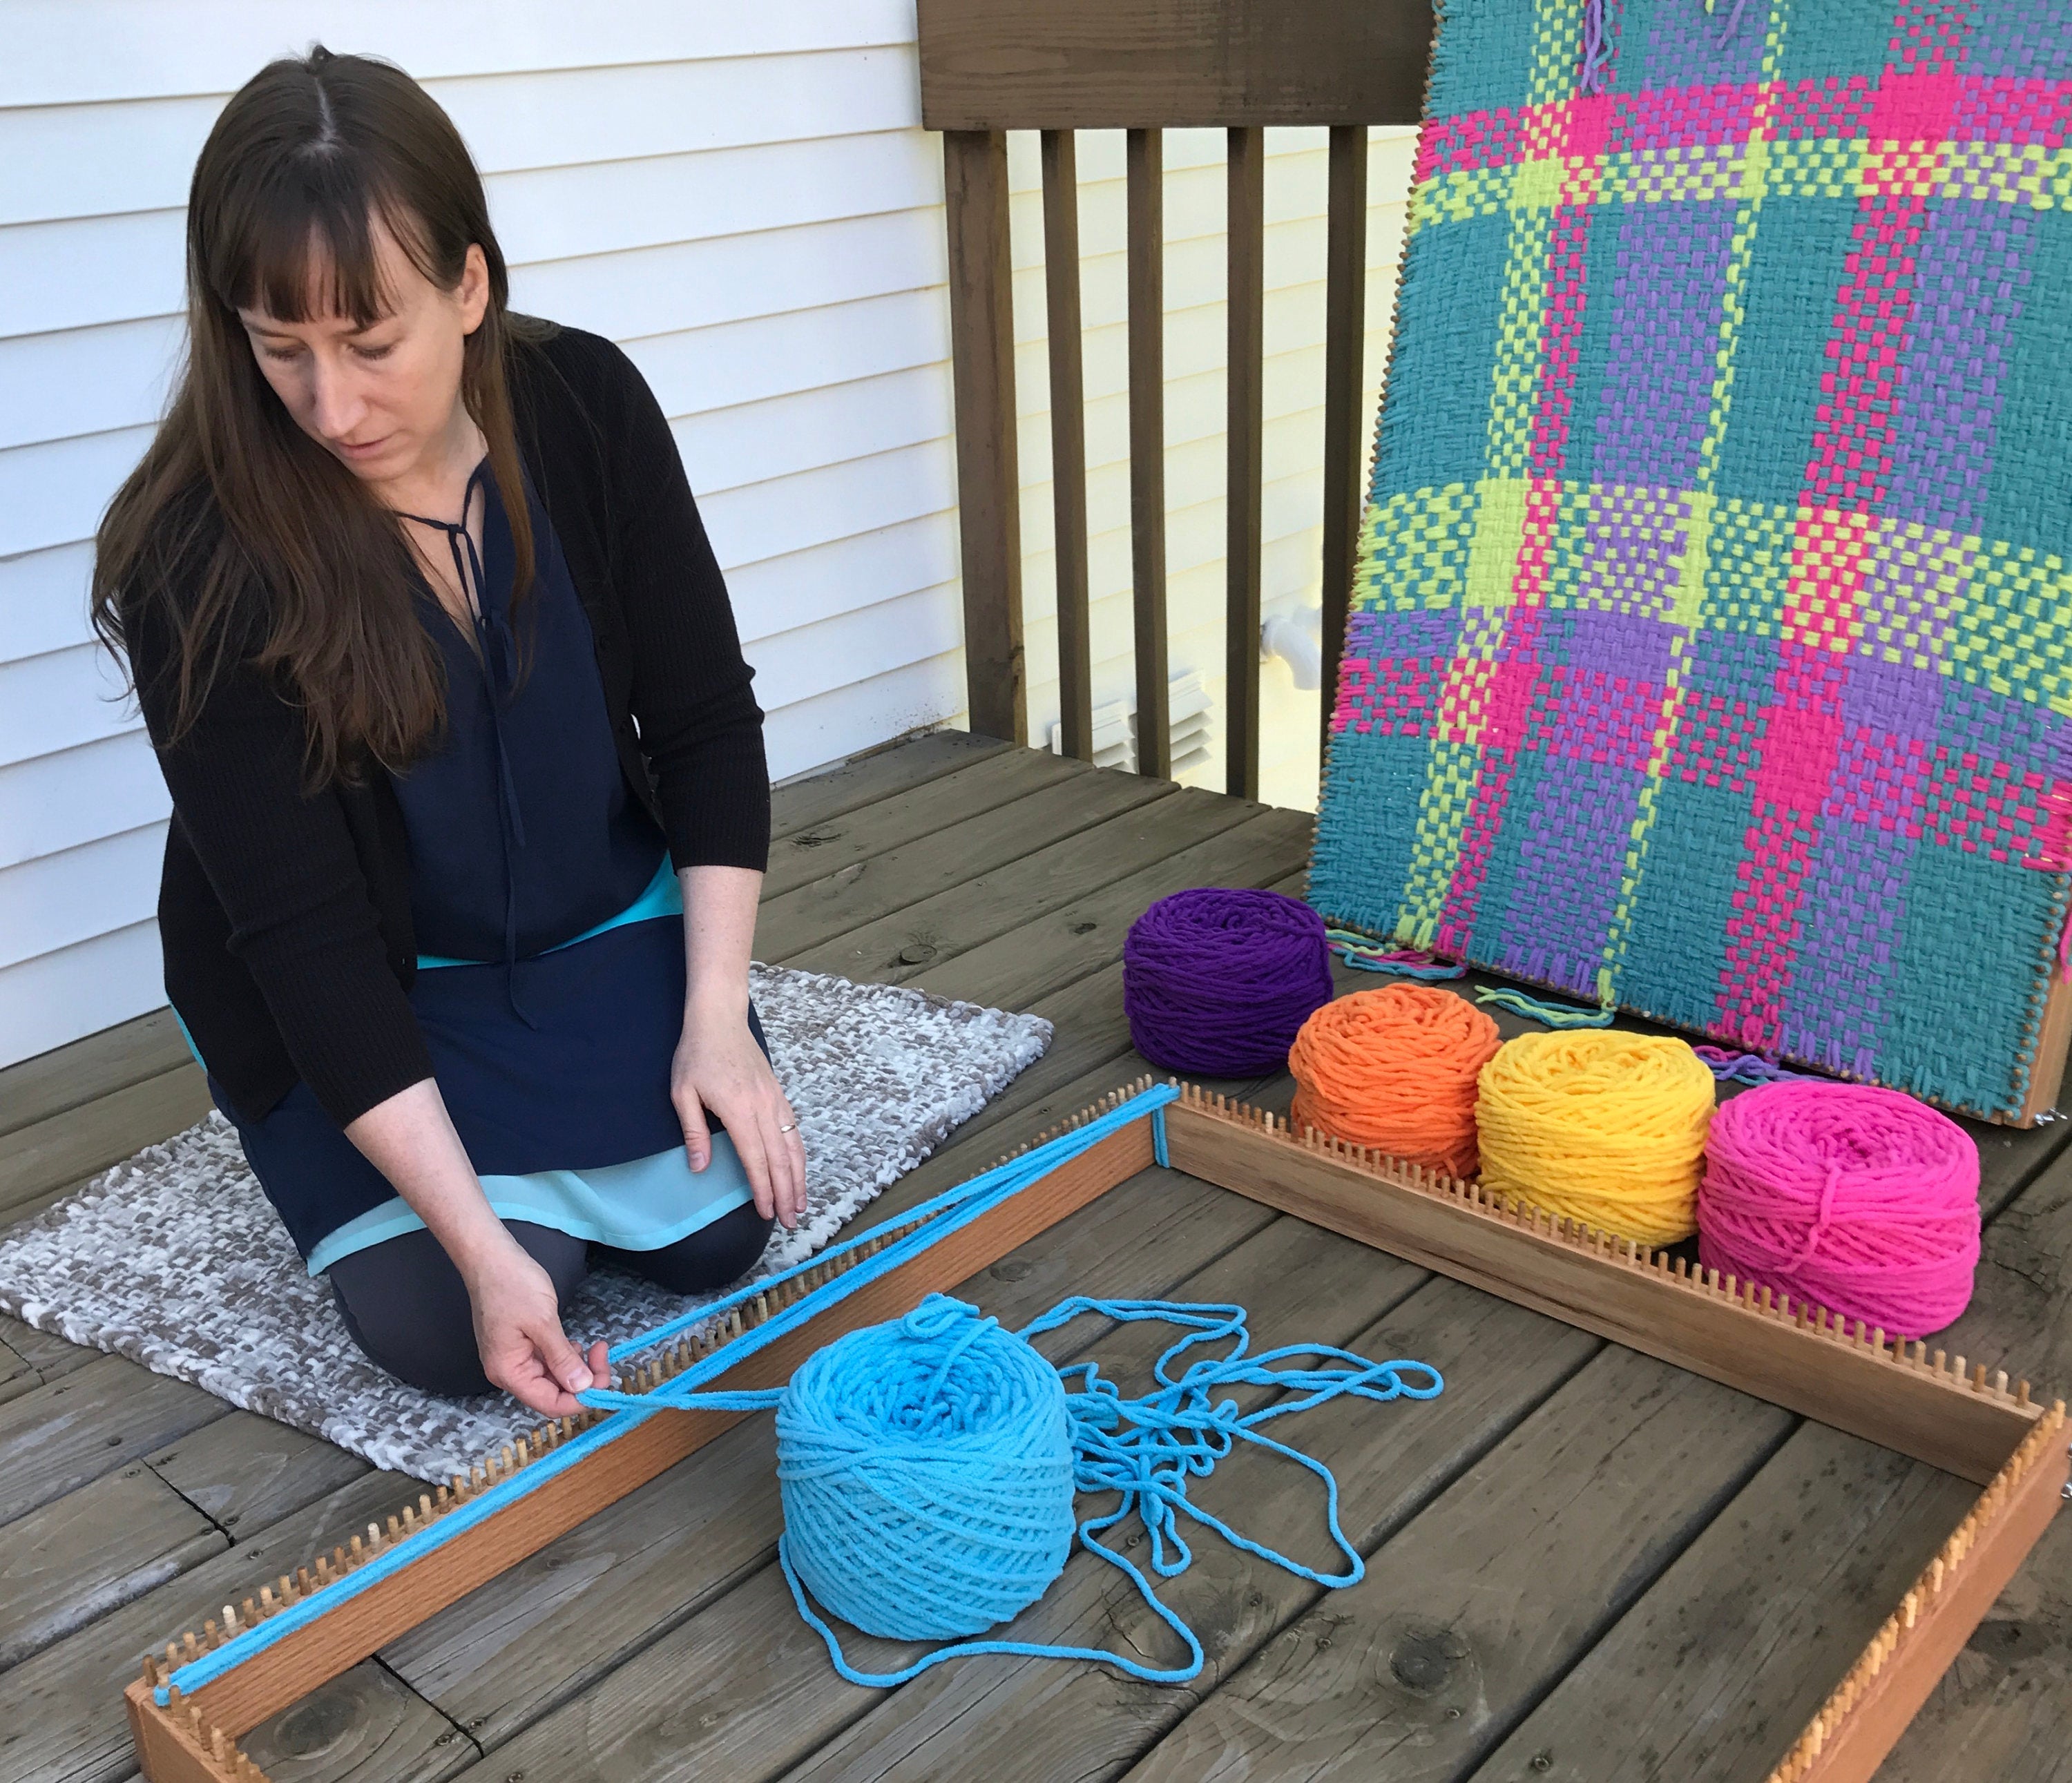 Knitting Looming Craft Kit Weaving Loomings And Knitting Looming